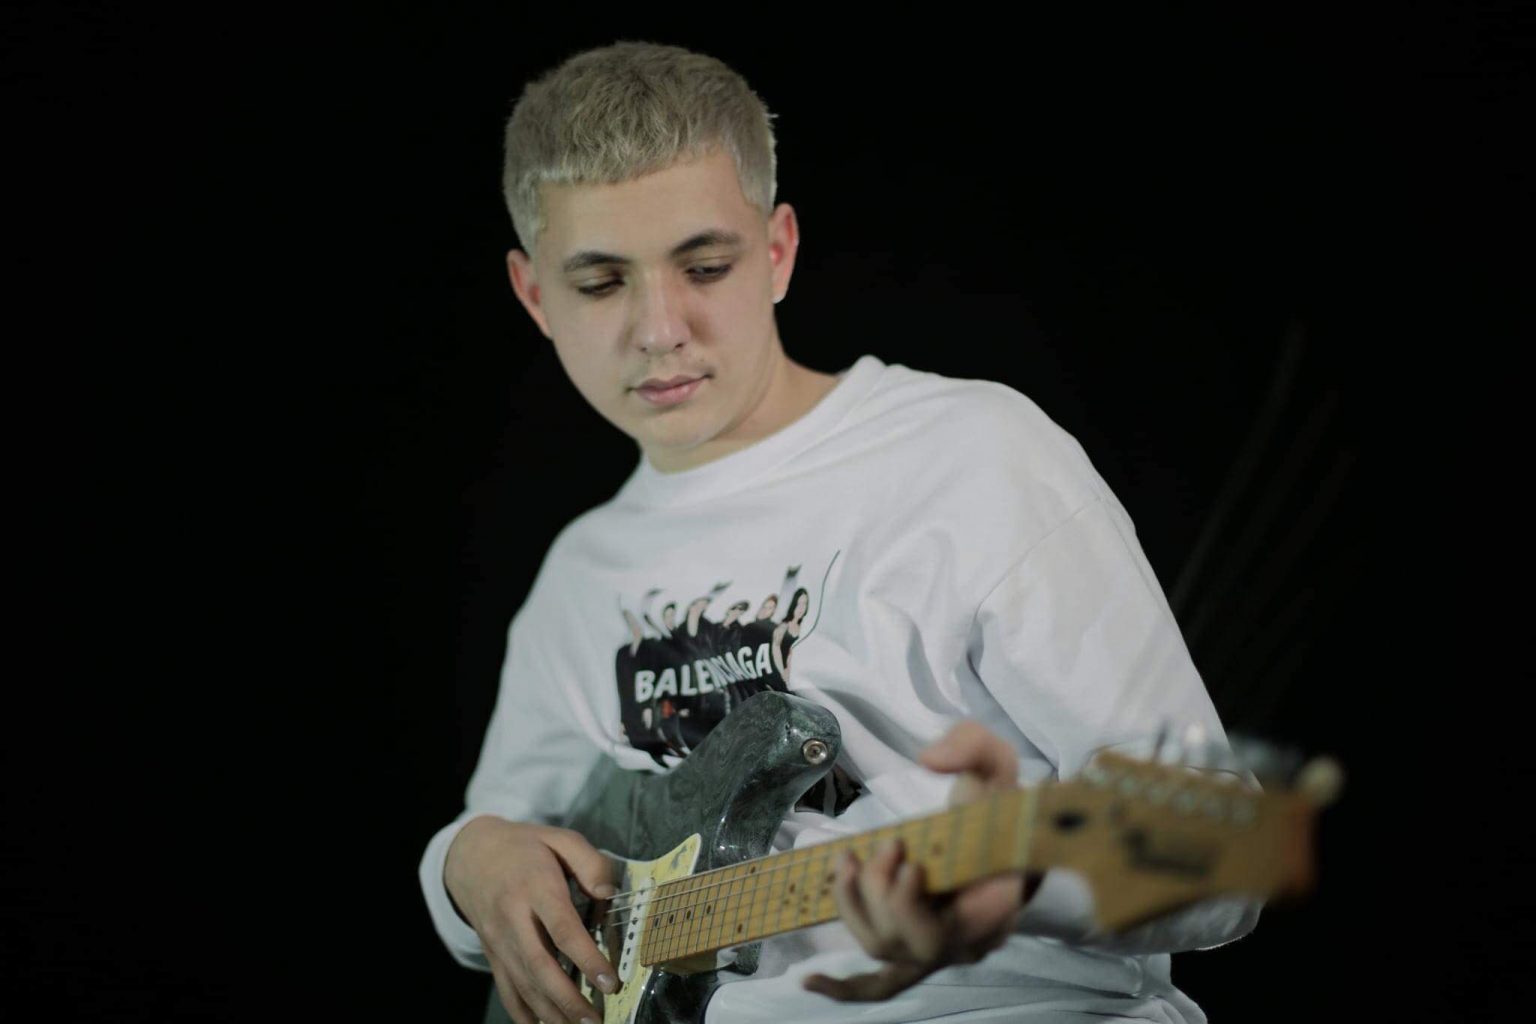 w 5 - Erik Grainca, 15 vjeçari që premton shumë në muzikë